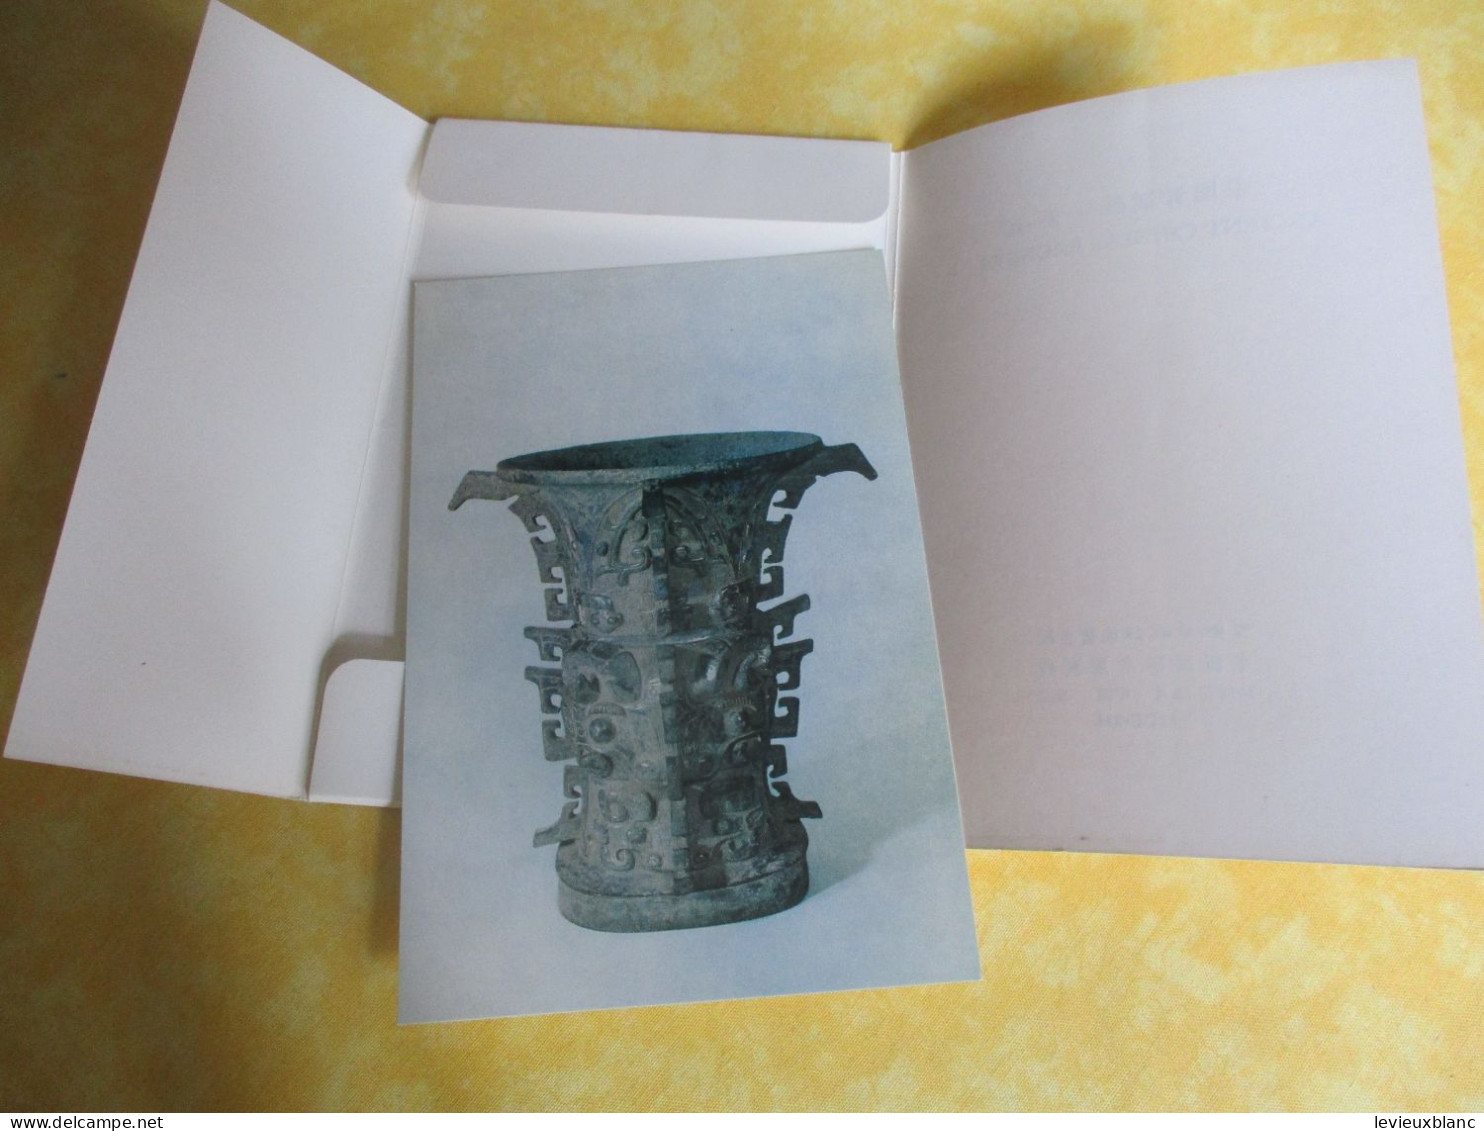 10 Cartes Postales Anciennes/Ancient Chinese Bronzes I /  République Populaire De Chine / 1976     JAP61 - China